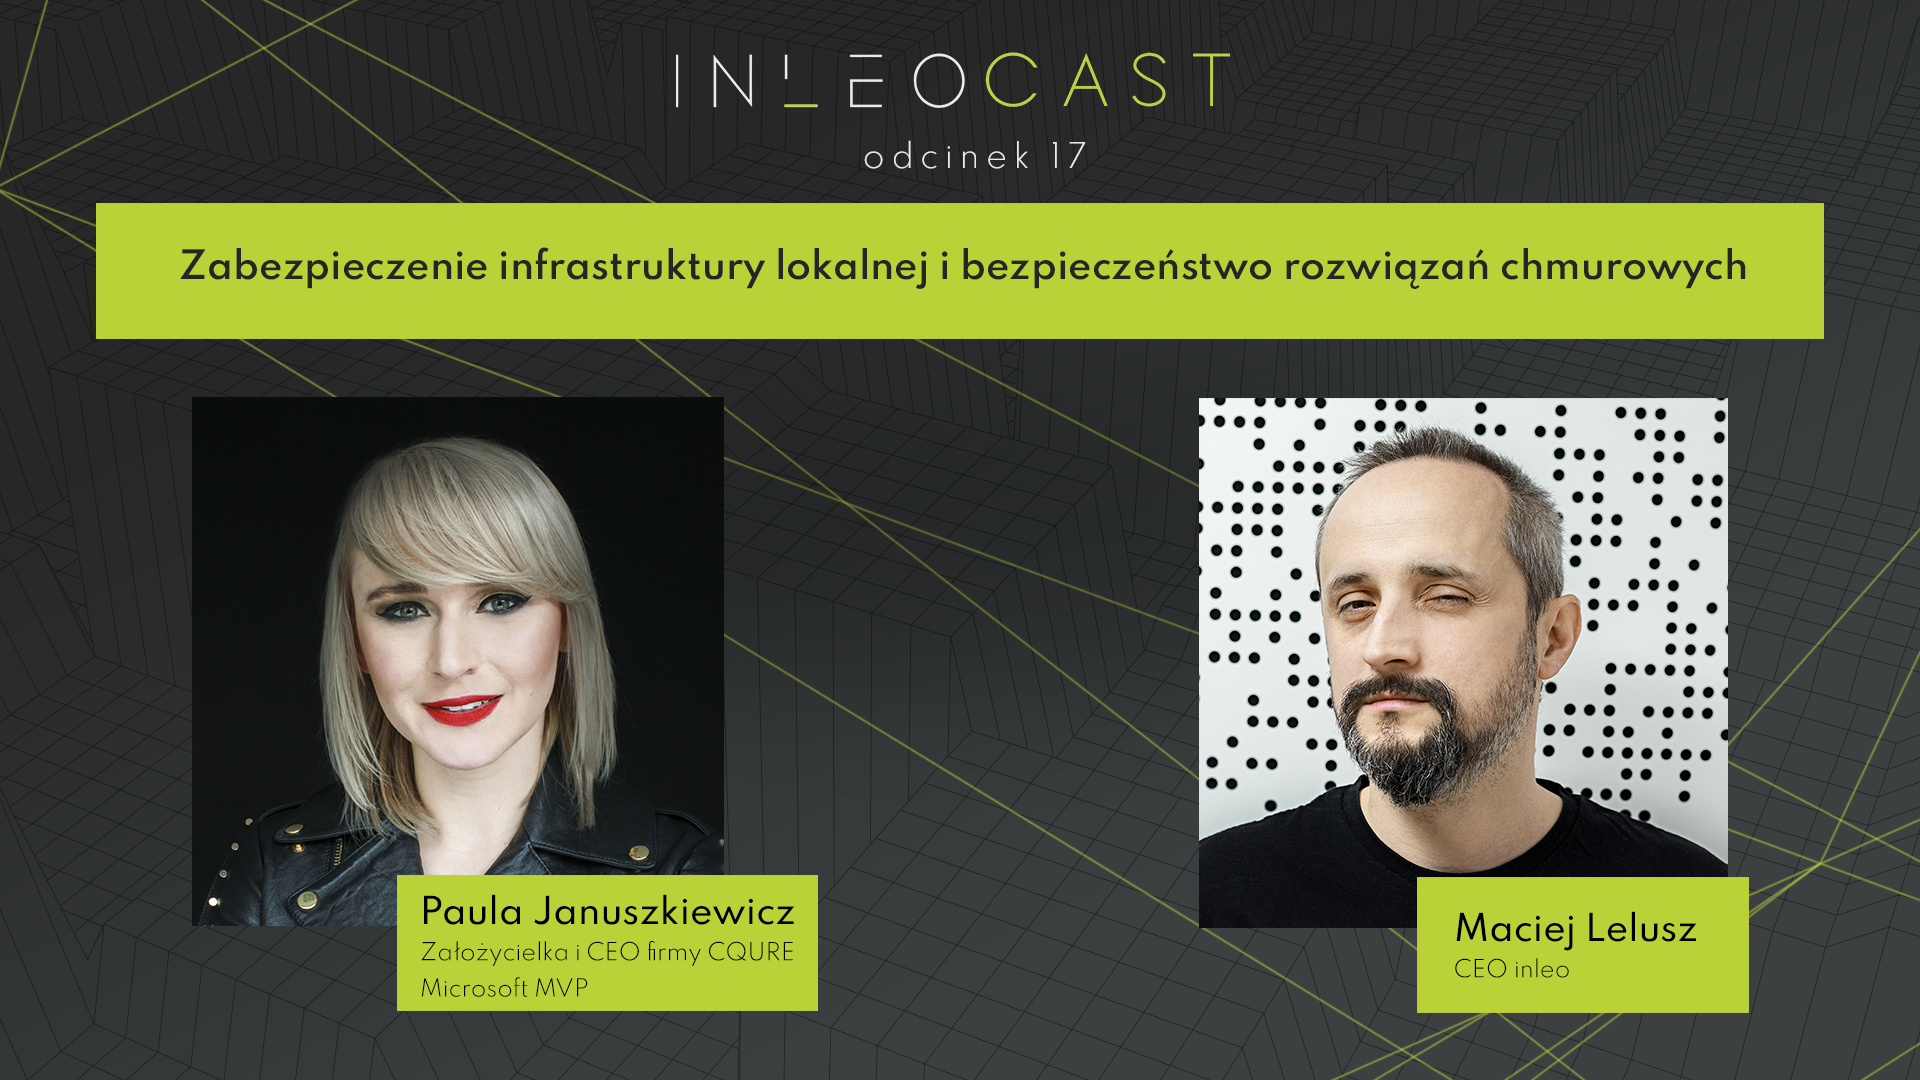 Inleocast x Paula Januszkiewicz